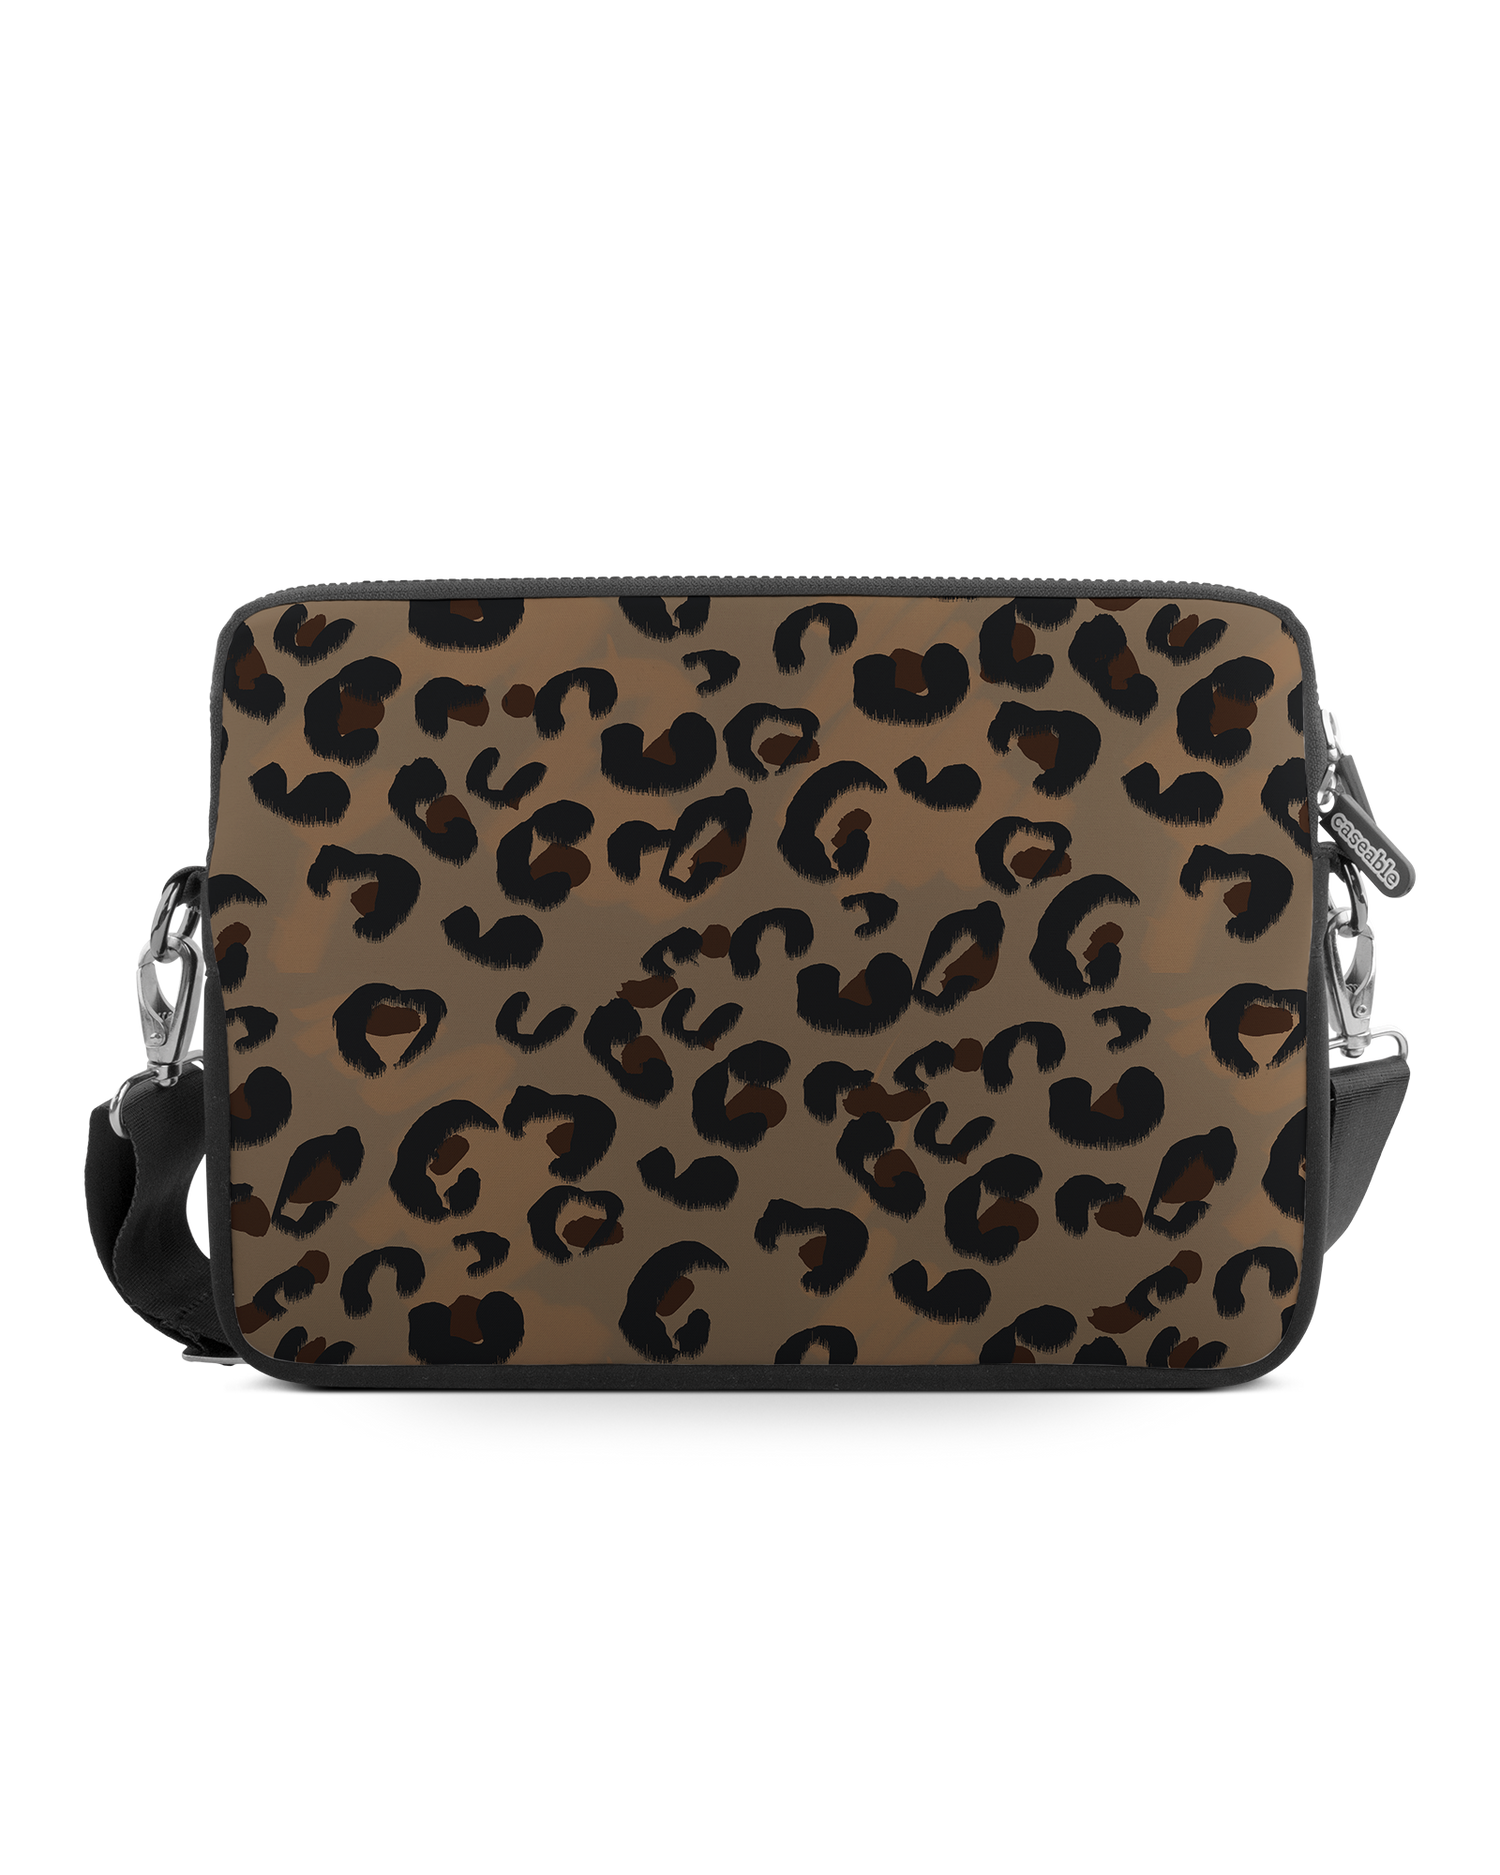 Leopard Repeat Premium Laptop Bag 13 inch: Front View